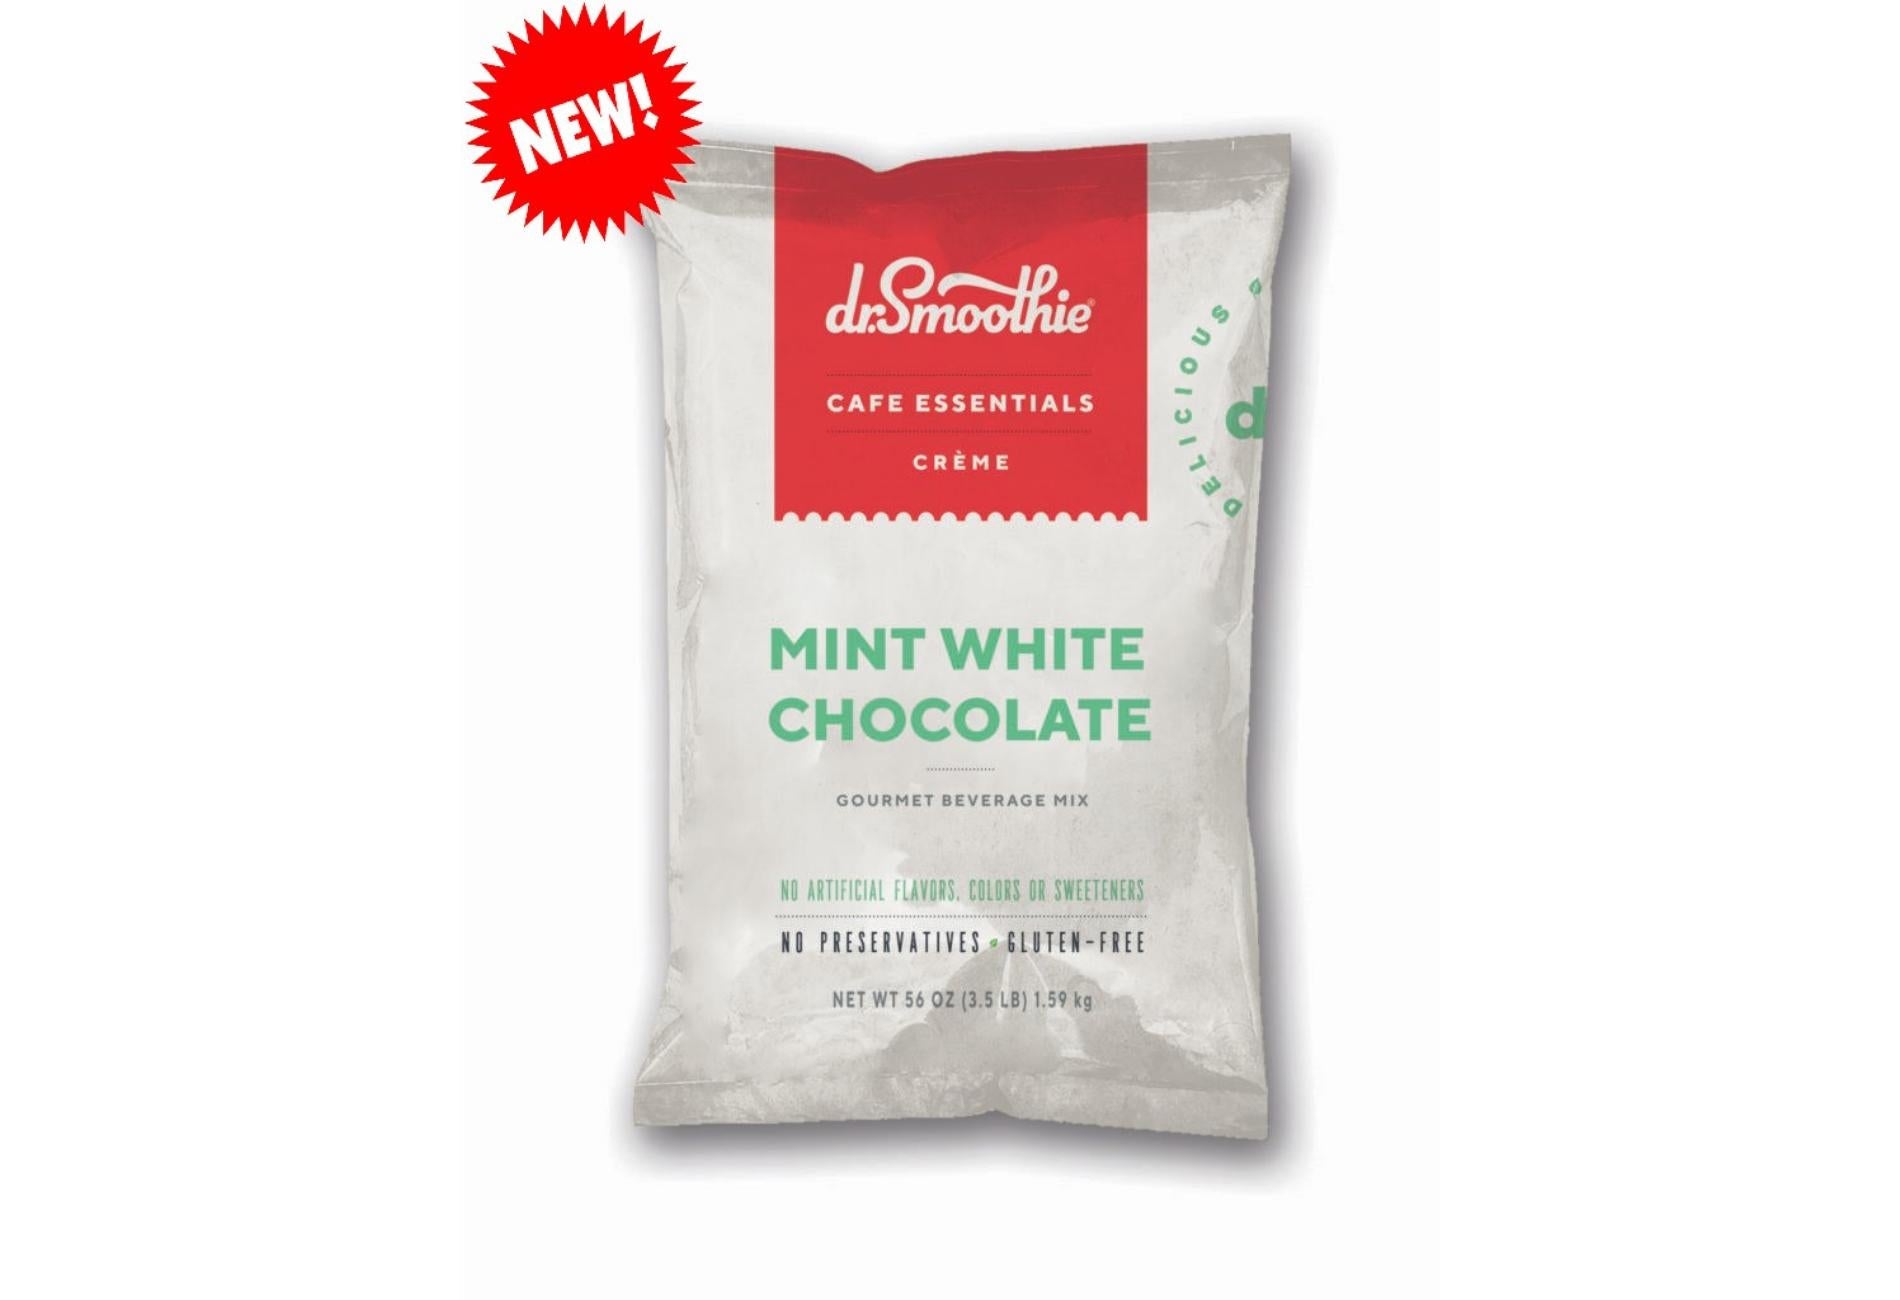 Dr. Smoothie Cafe Essentials Creme - 3.5lb Bulk Bag: Mint White Chocolate